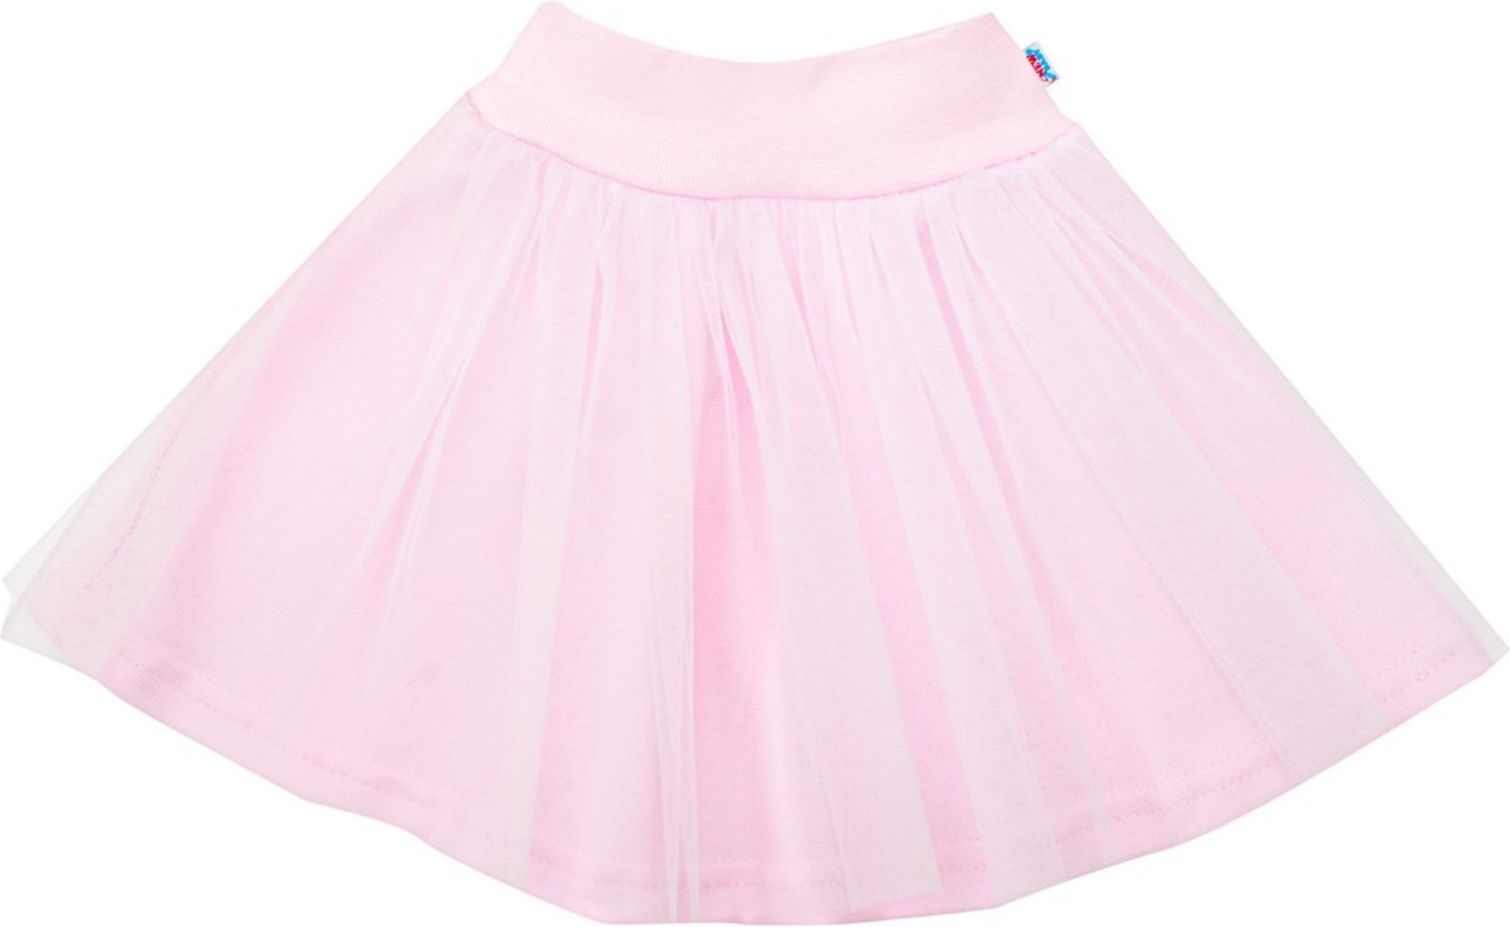 Kojenecká tylová suknička s bavlněnou spodničkou New Baby Little Princess - Kojenecká tylová suknička s bavlněnou spodničkou New Baby Little Princess - obrázek 1